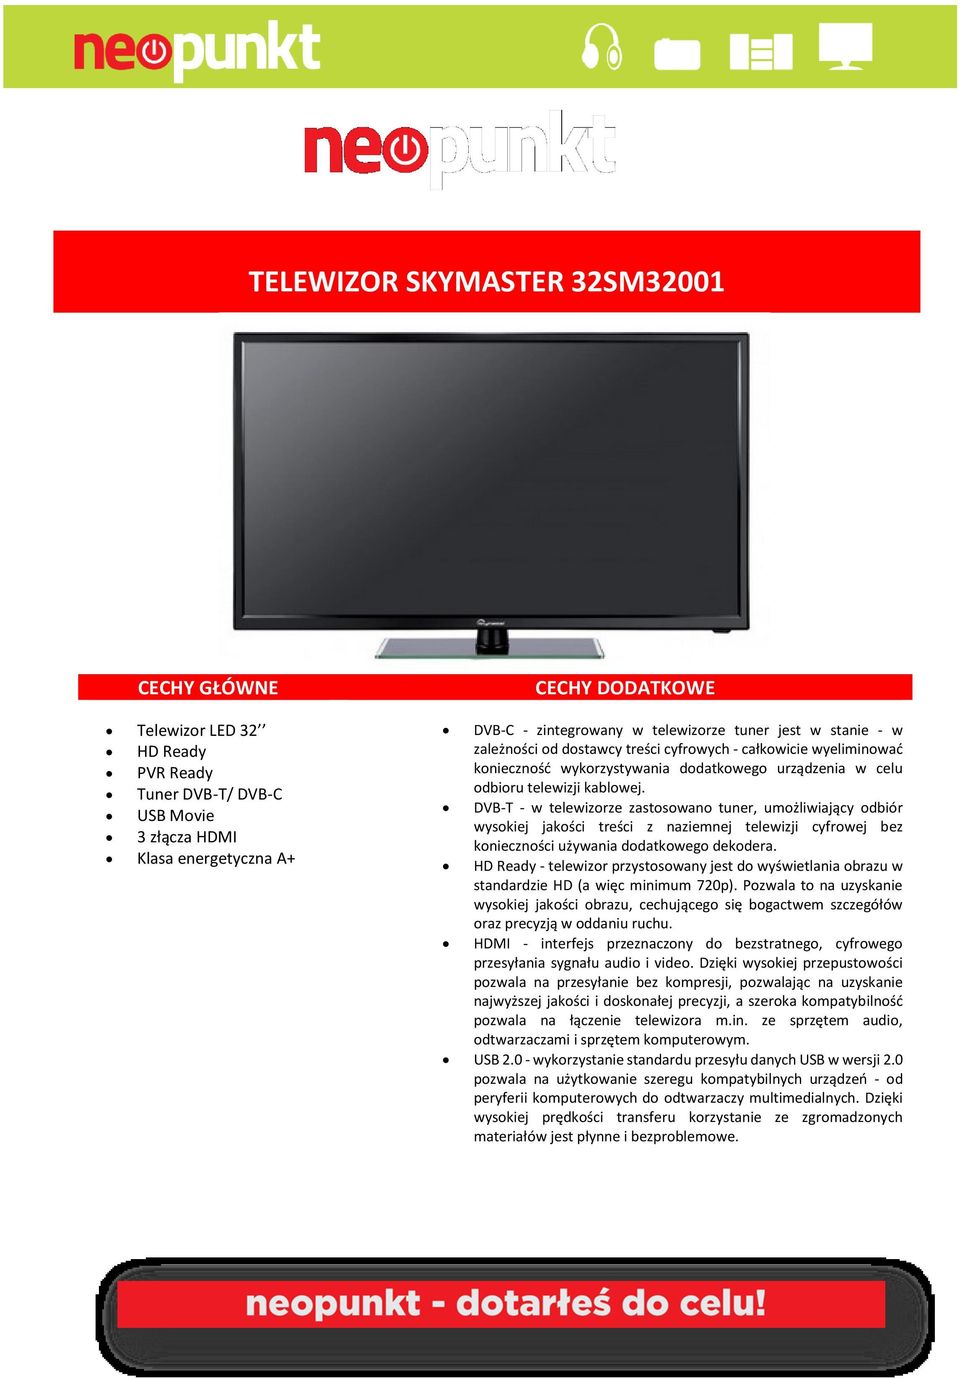 DVB-T - w telewizorze zastosowano tuner, umożliwiający odbiór wysokiej jakości treści z naziemnej telewizji cyfrowej bez konieczności używania dodatkowego dekodera.